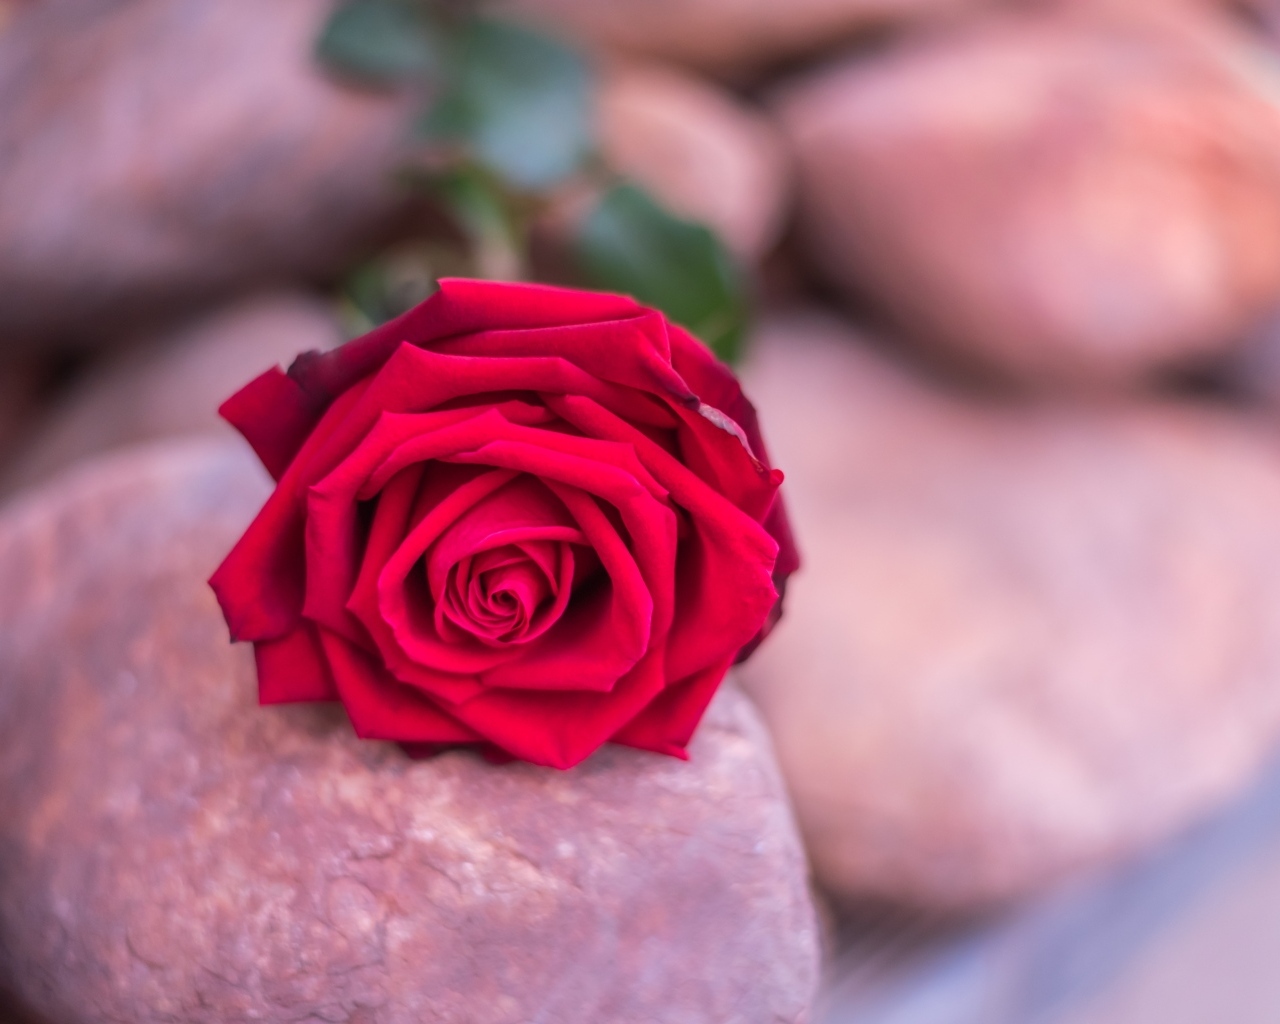 Алая роза лежит на камне